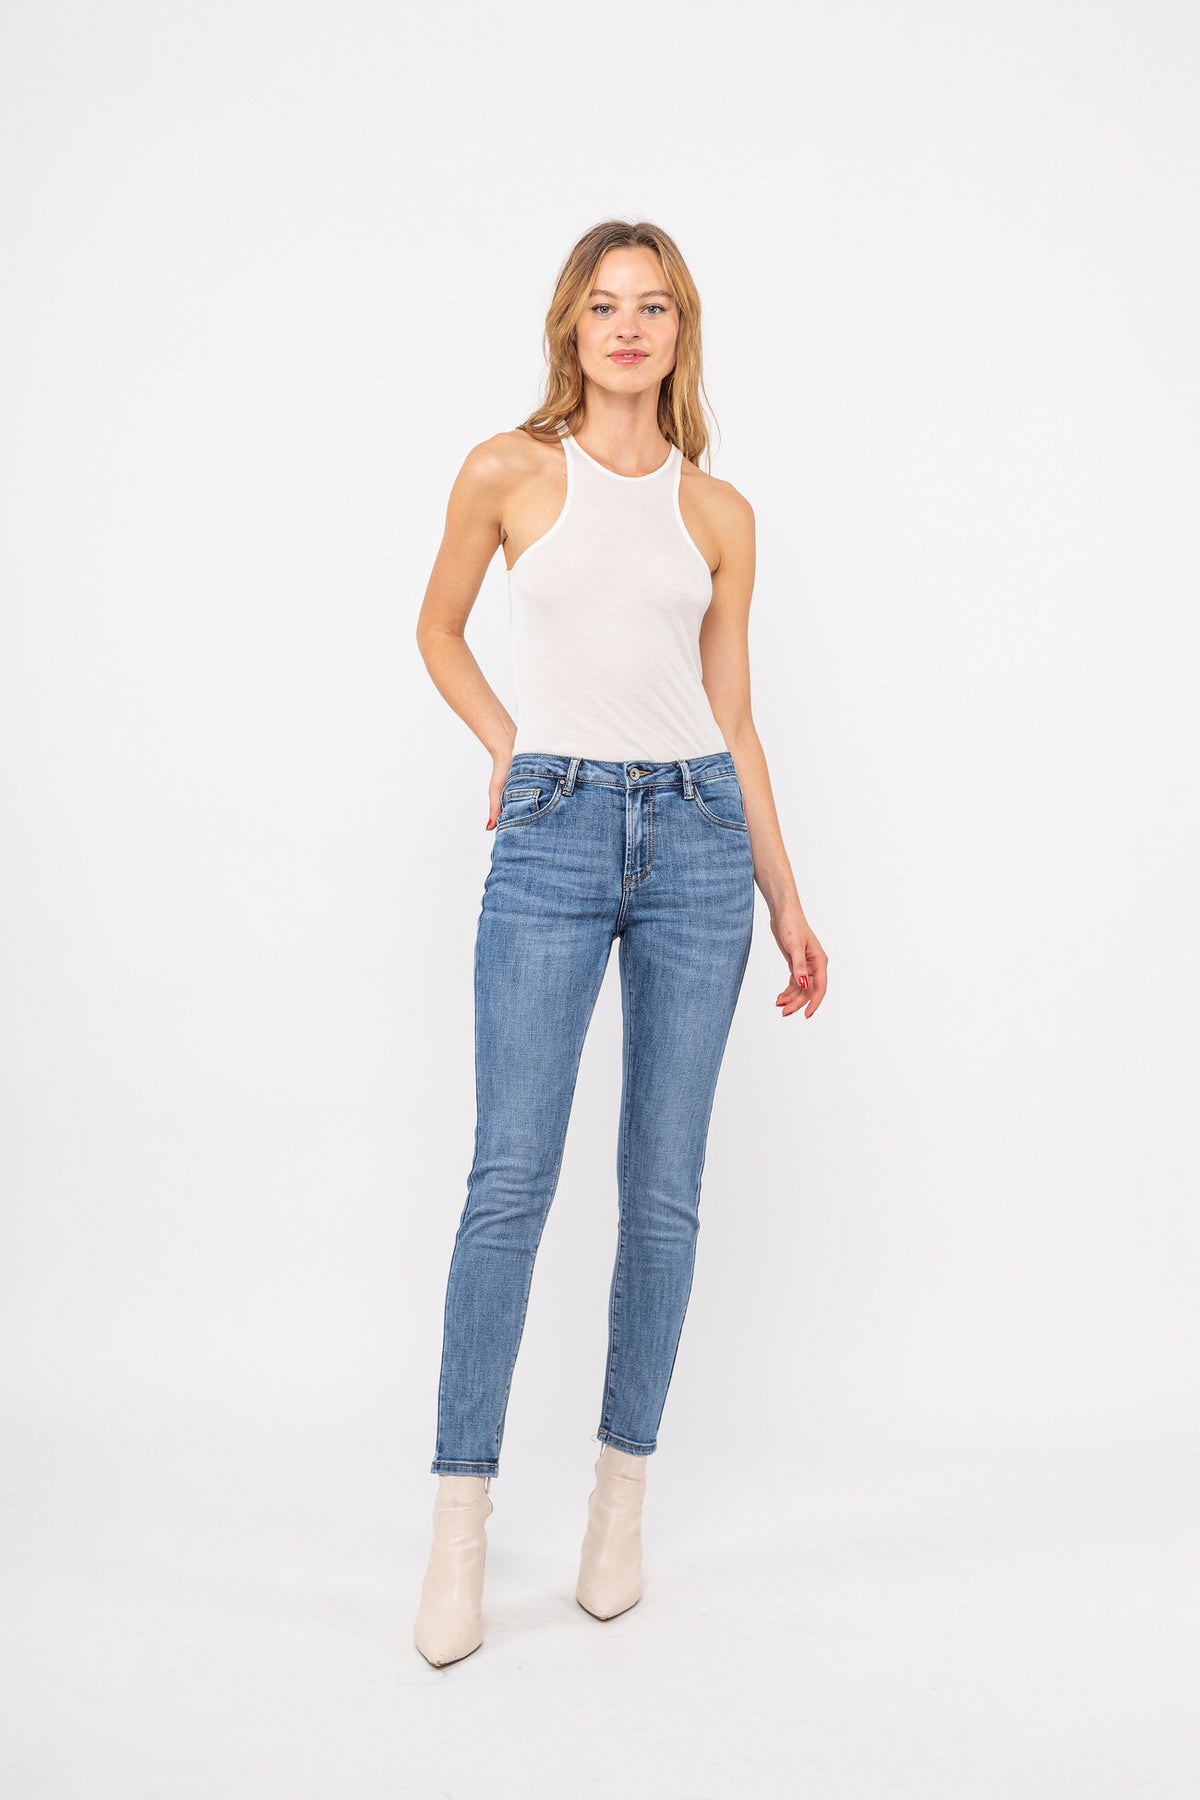 Drijvende blauwe slanke jeans - Mya